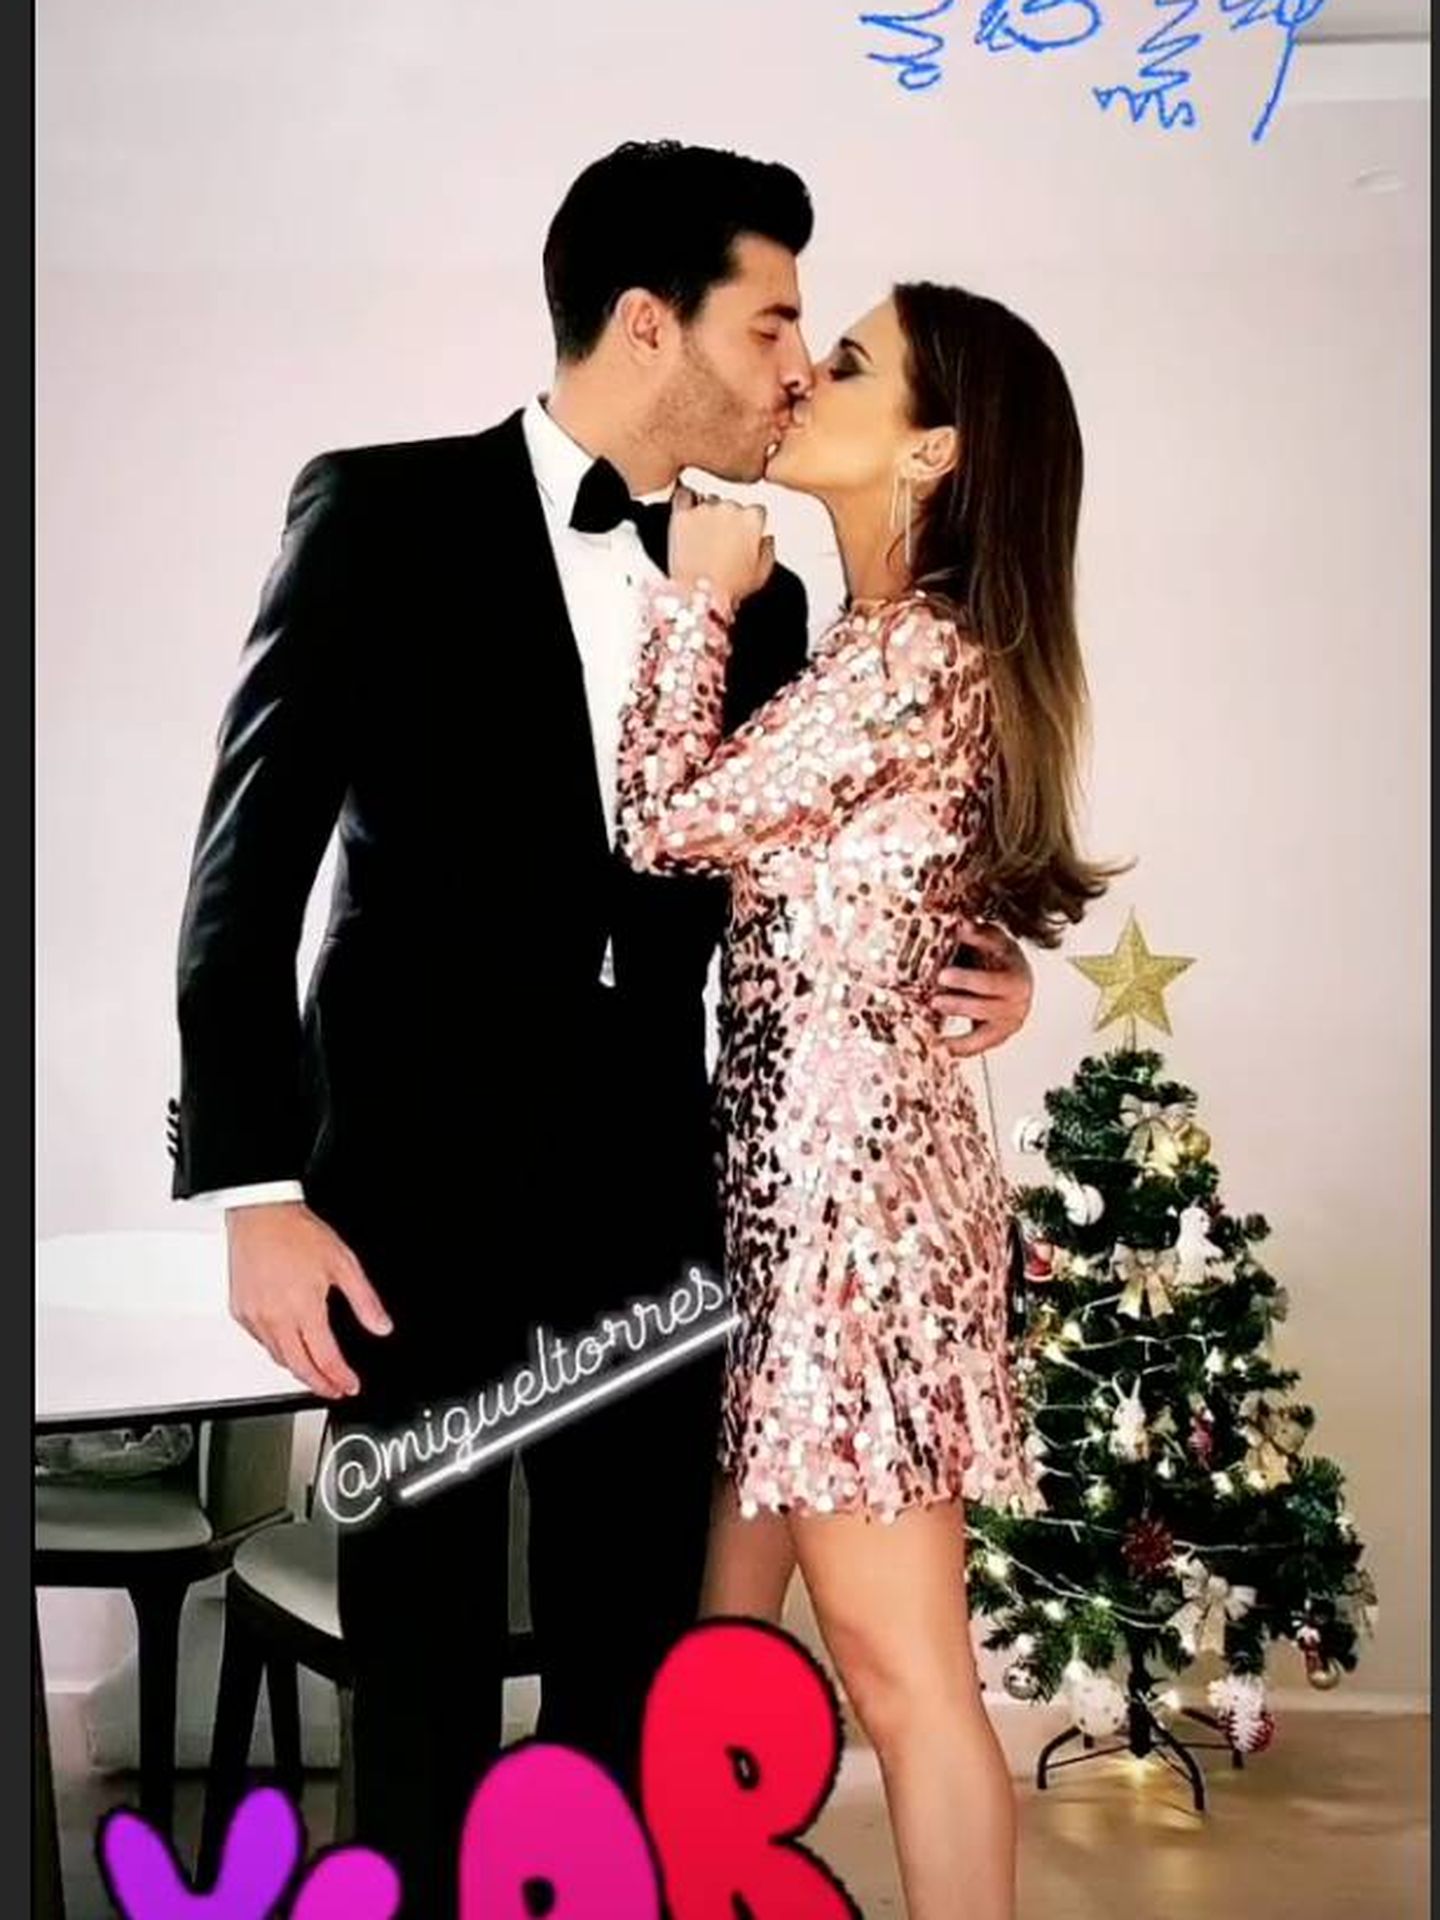  La pareja recibiendo el año. (Instagram)